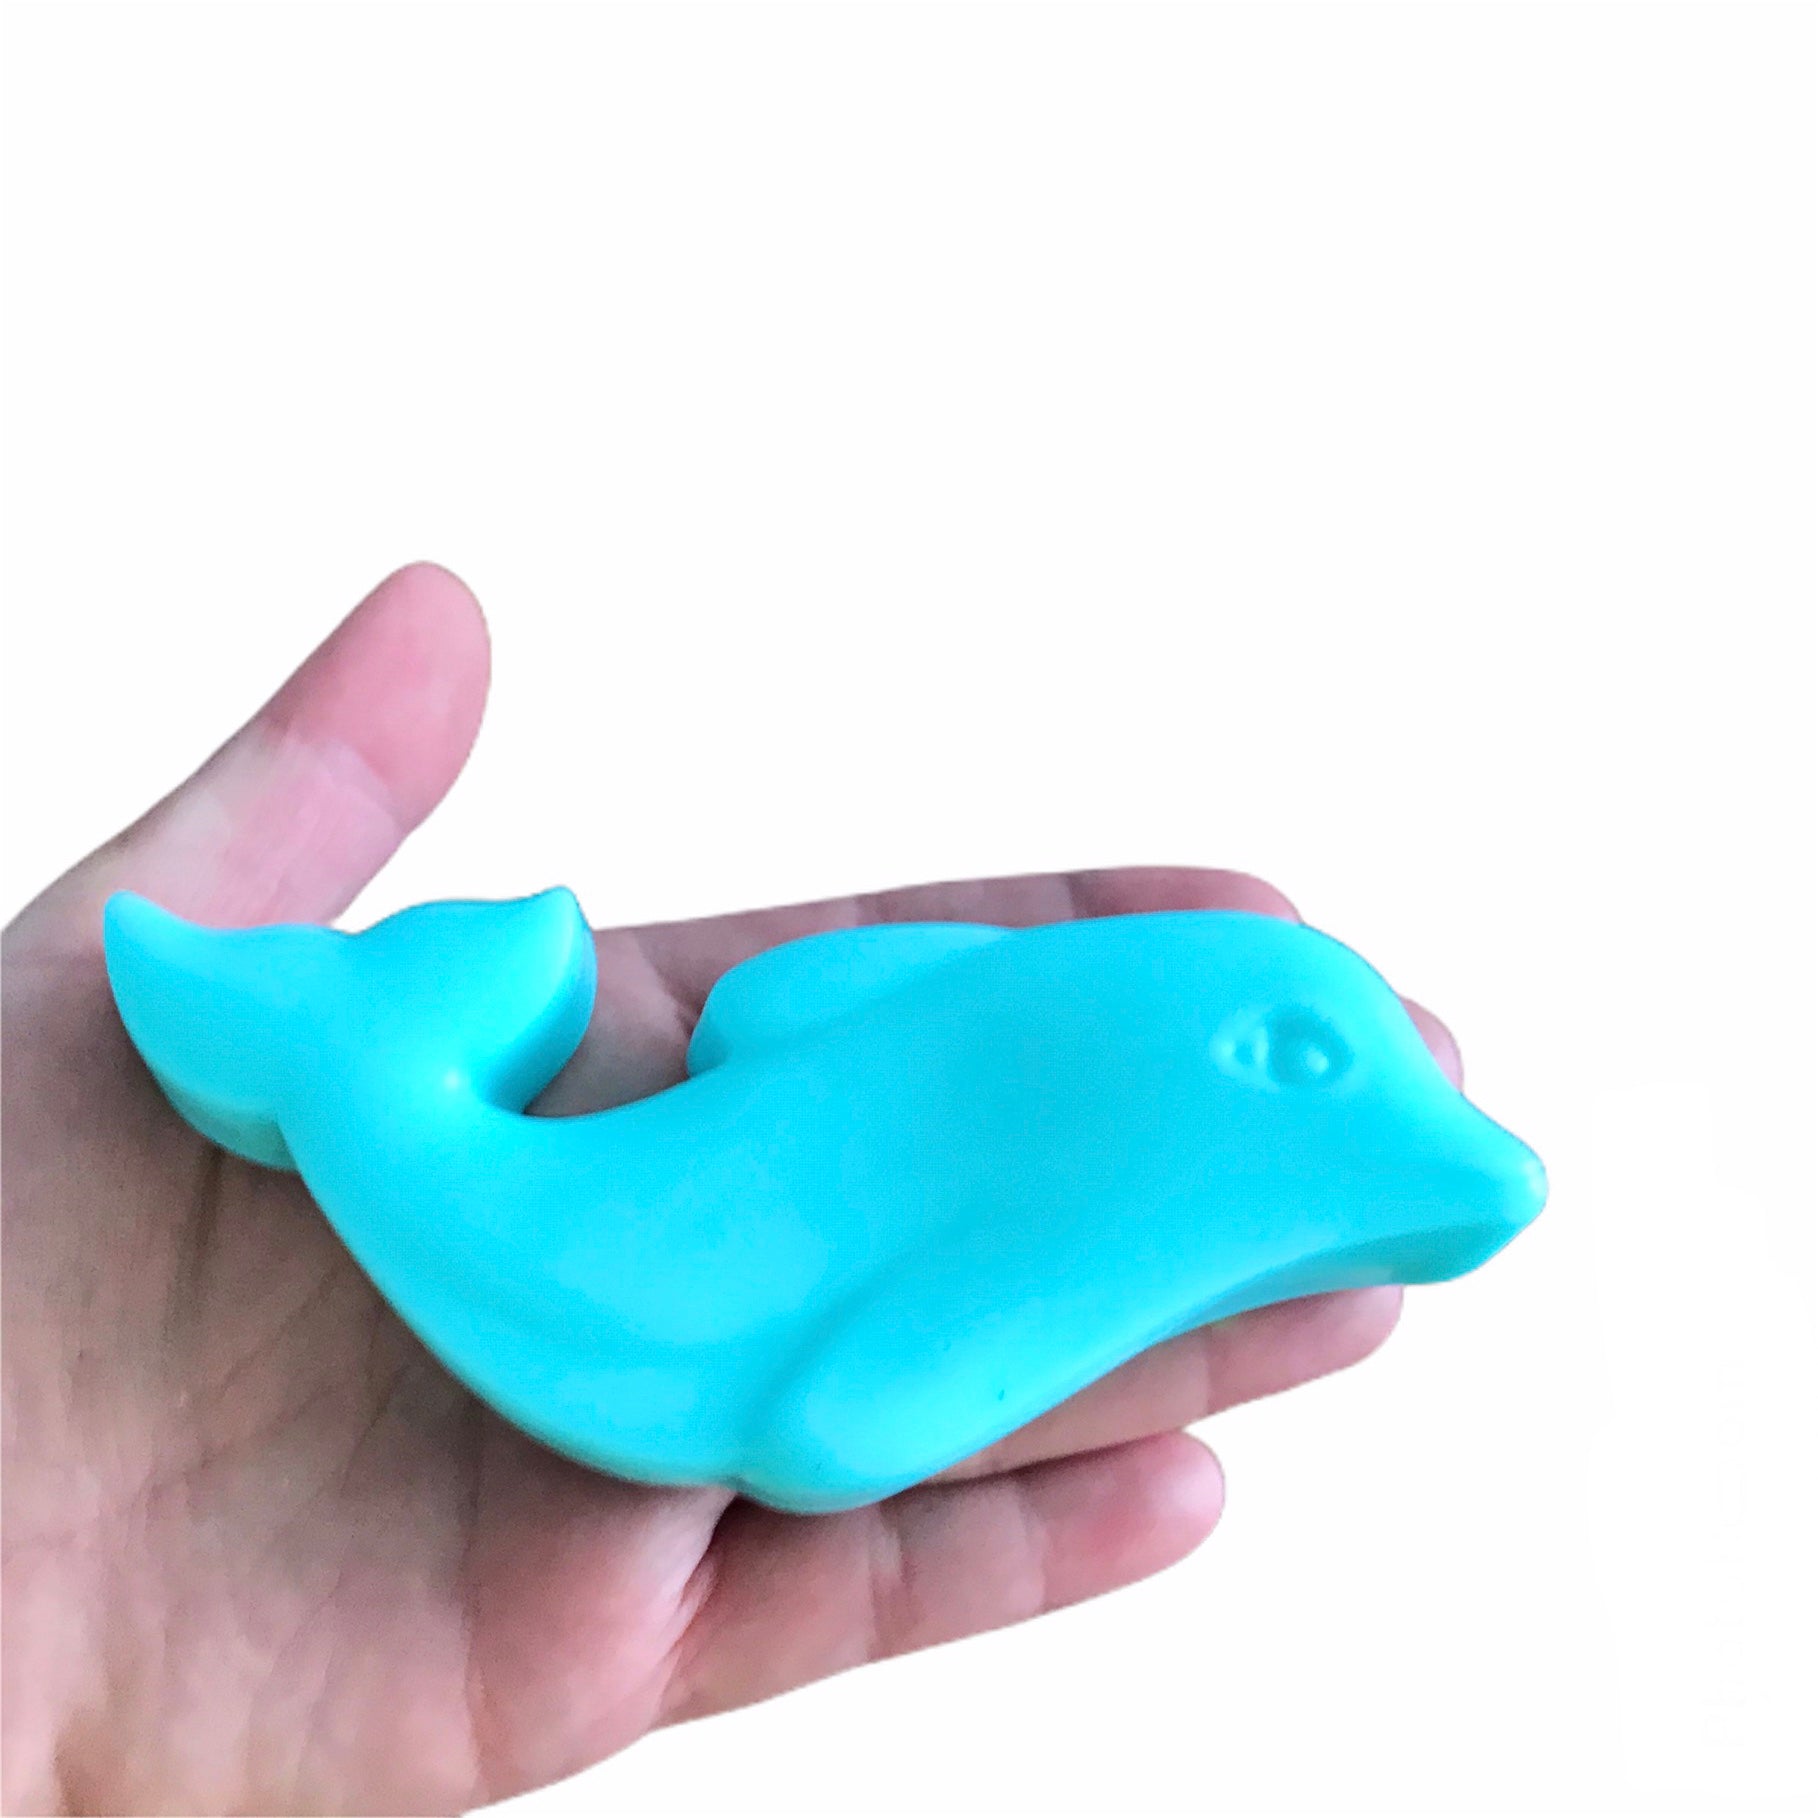 Dolphin Soap